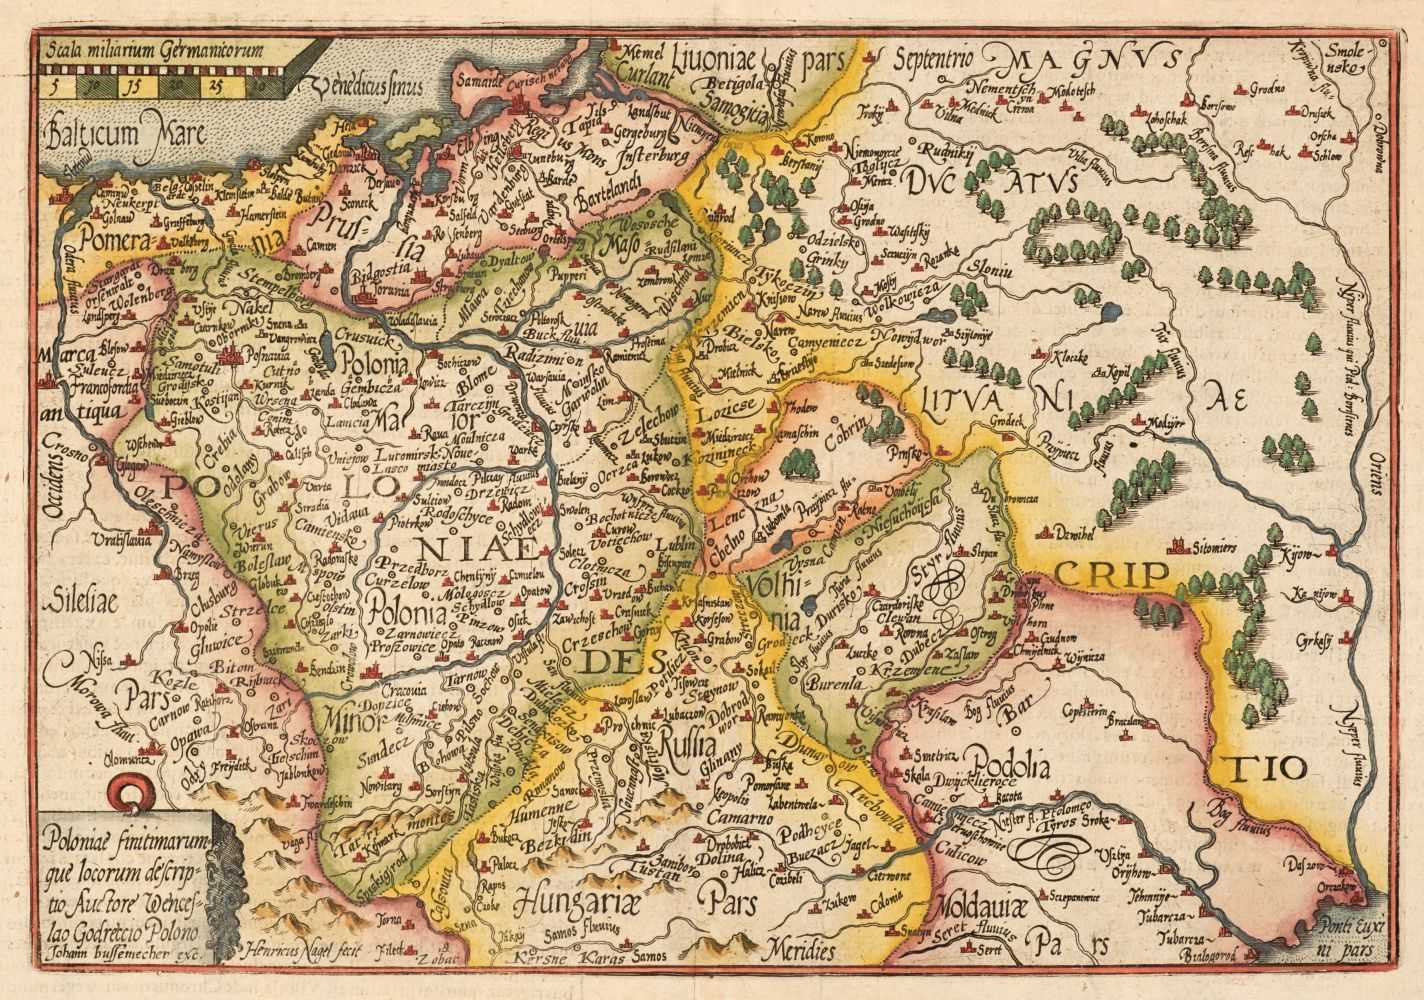 Lot 138 - Poland. Quad (Matthias), Poloniae Finitimarumque Locarum Descriptio..., circa 1600